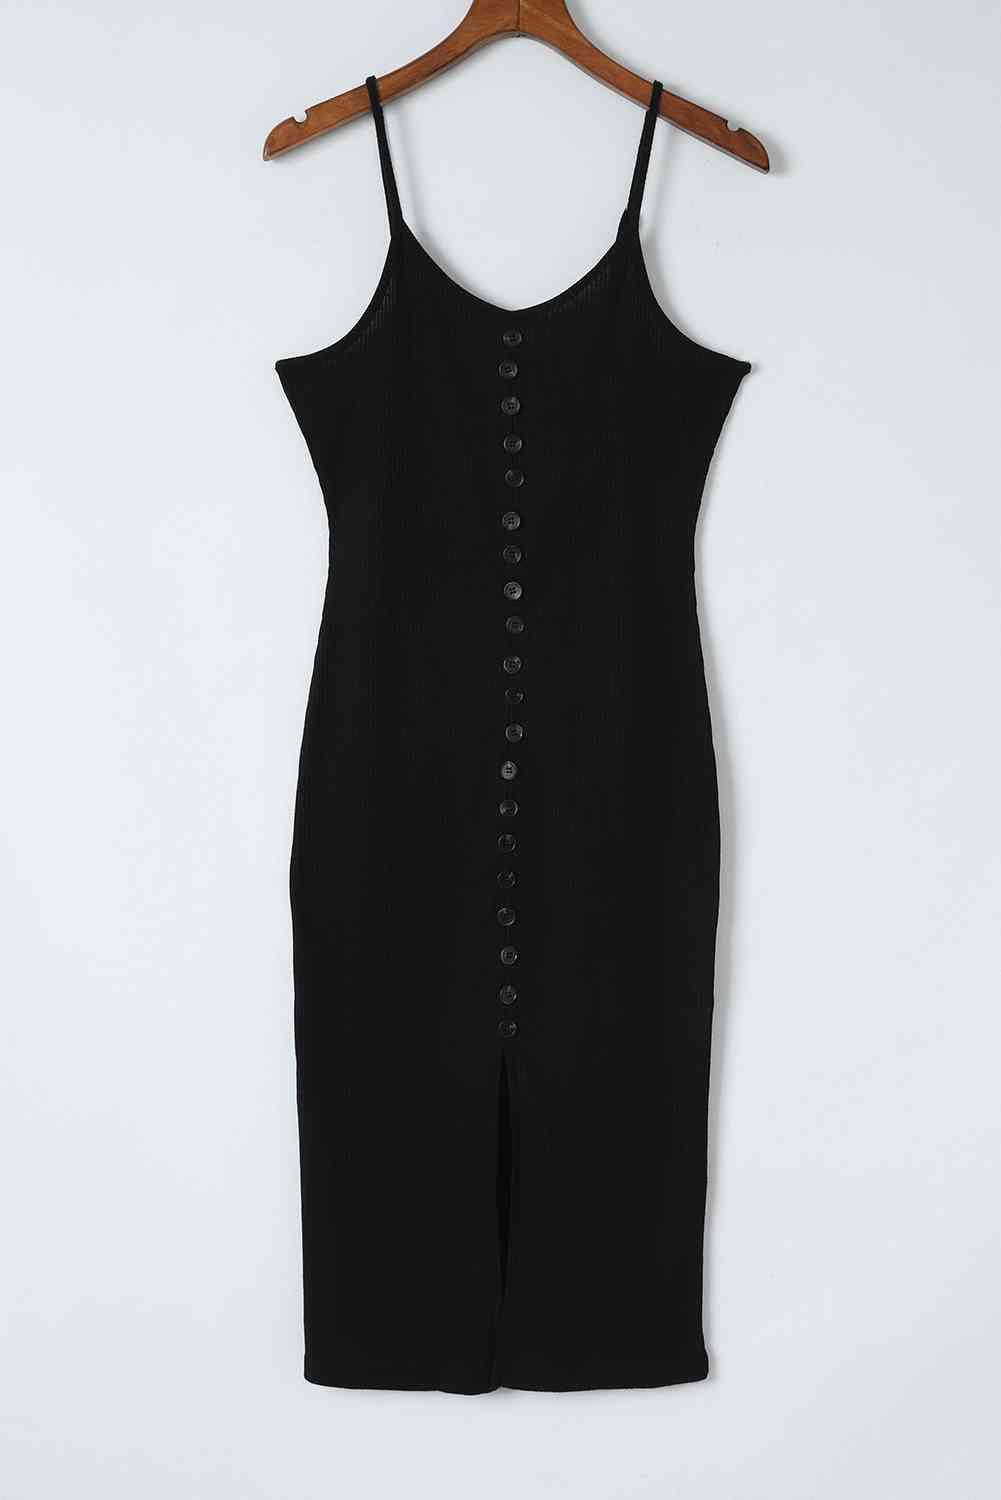 Bona Fide Fashion - Decorative Button Slit Midi Dress - Women Fashion - Bona Fide Fashion